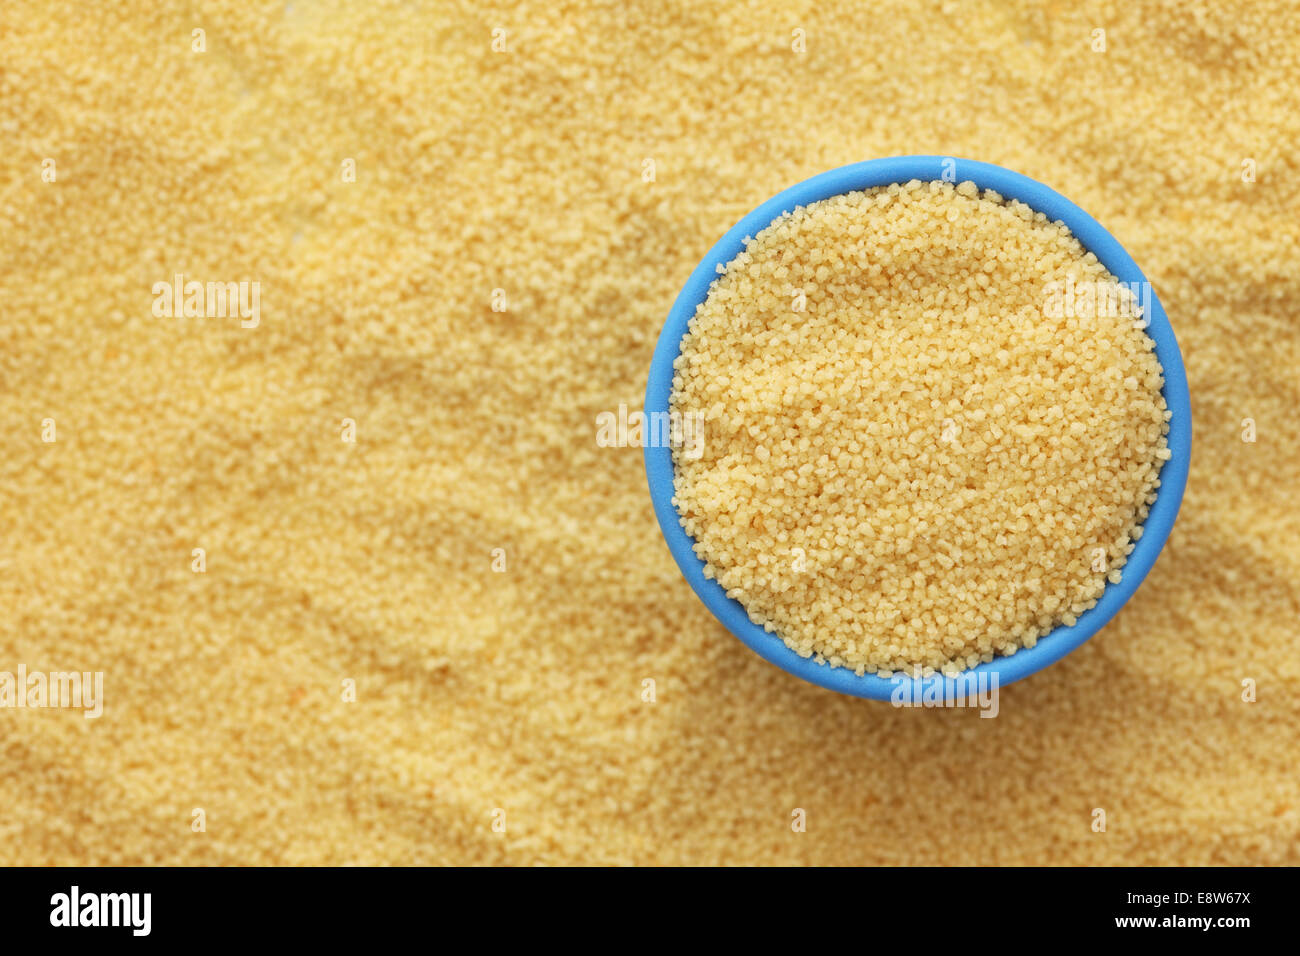 Le couscous dans un bol bleu sur fond de couscous. Close-up. Banque D'Images